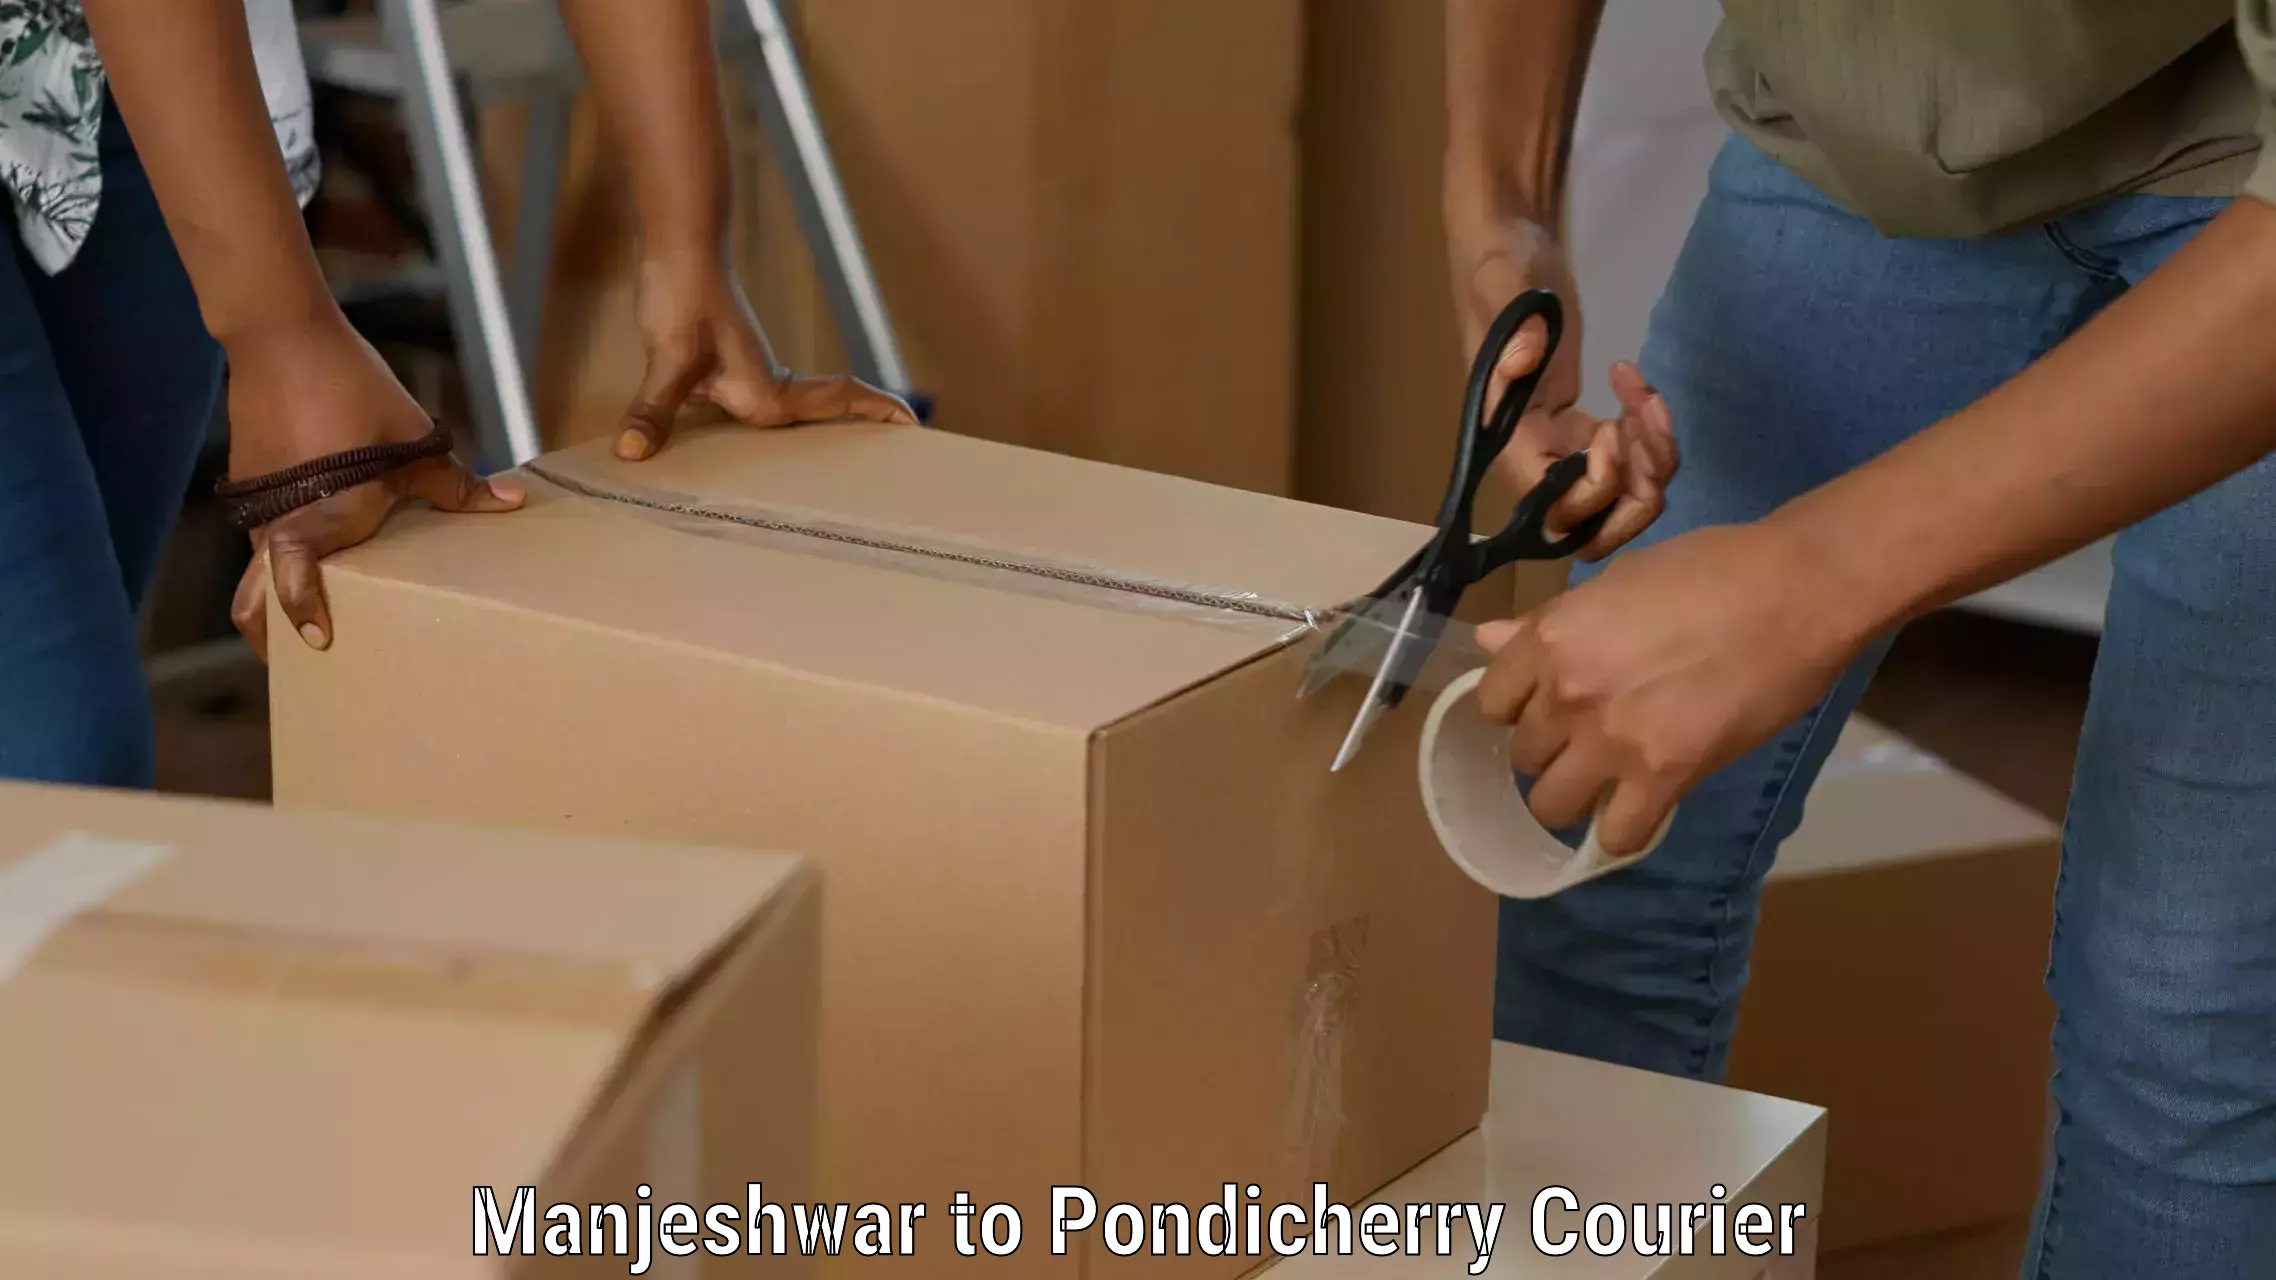 Special handling courier Manjeshwar to Karaikal